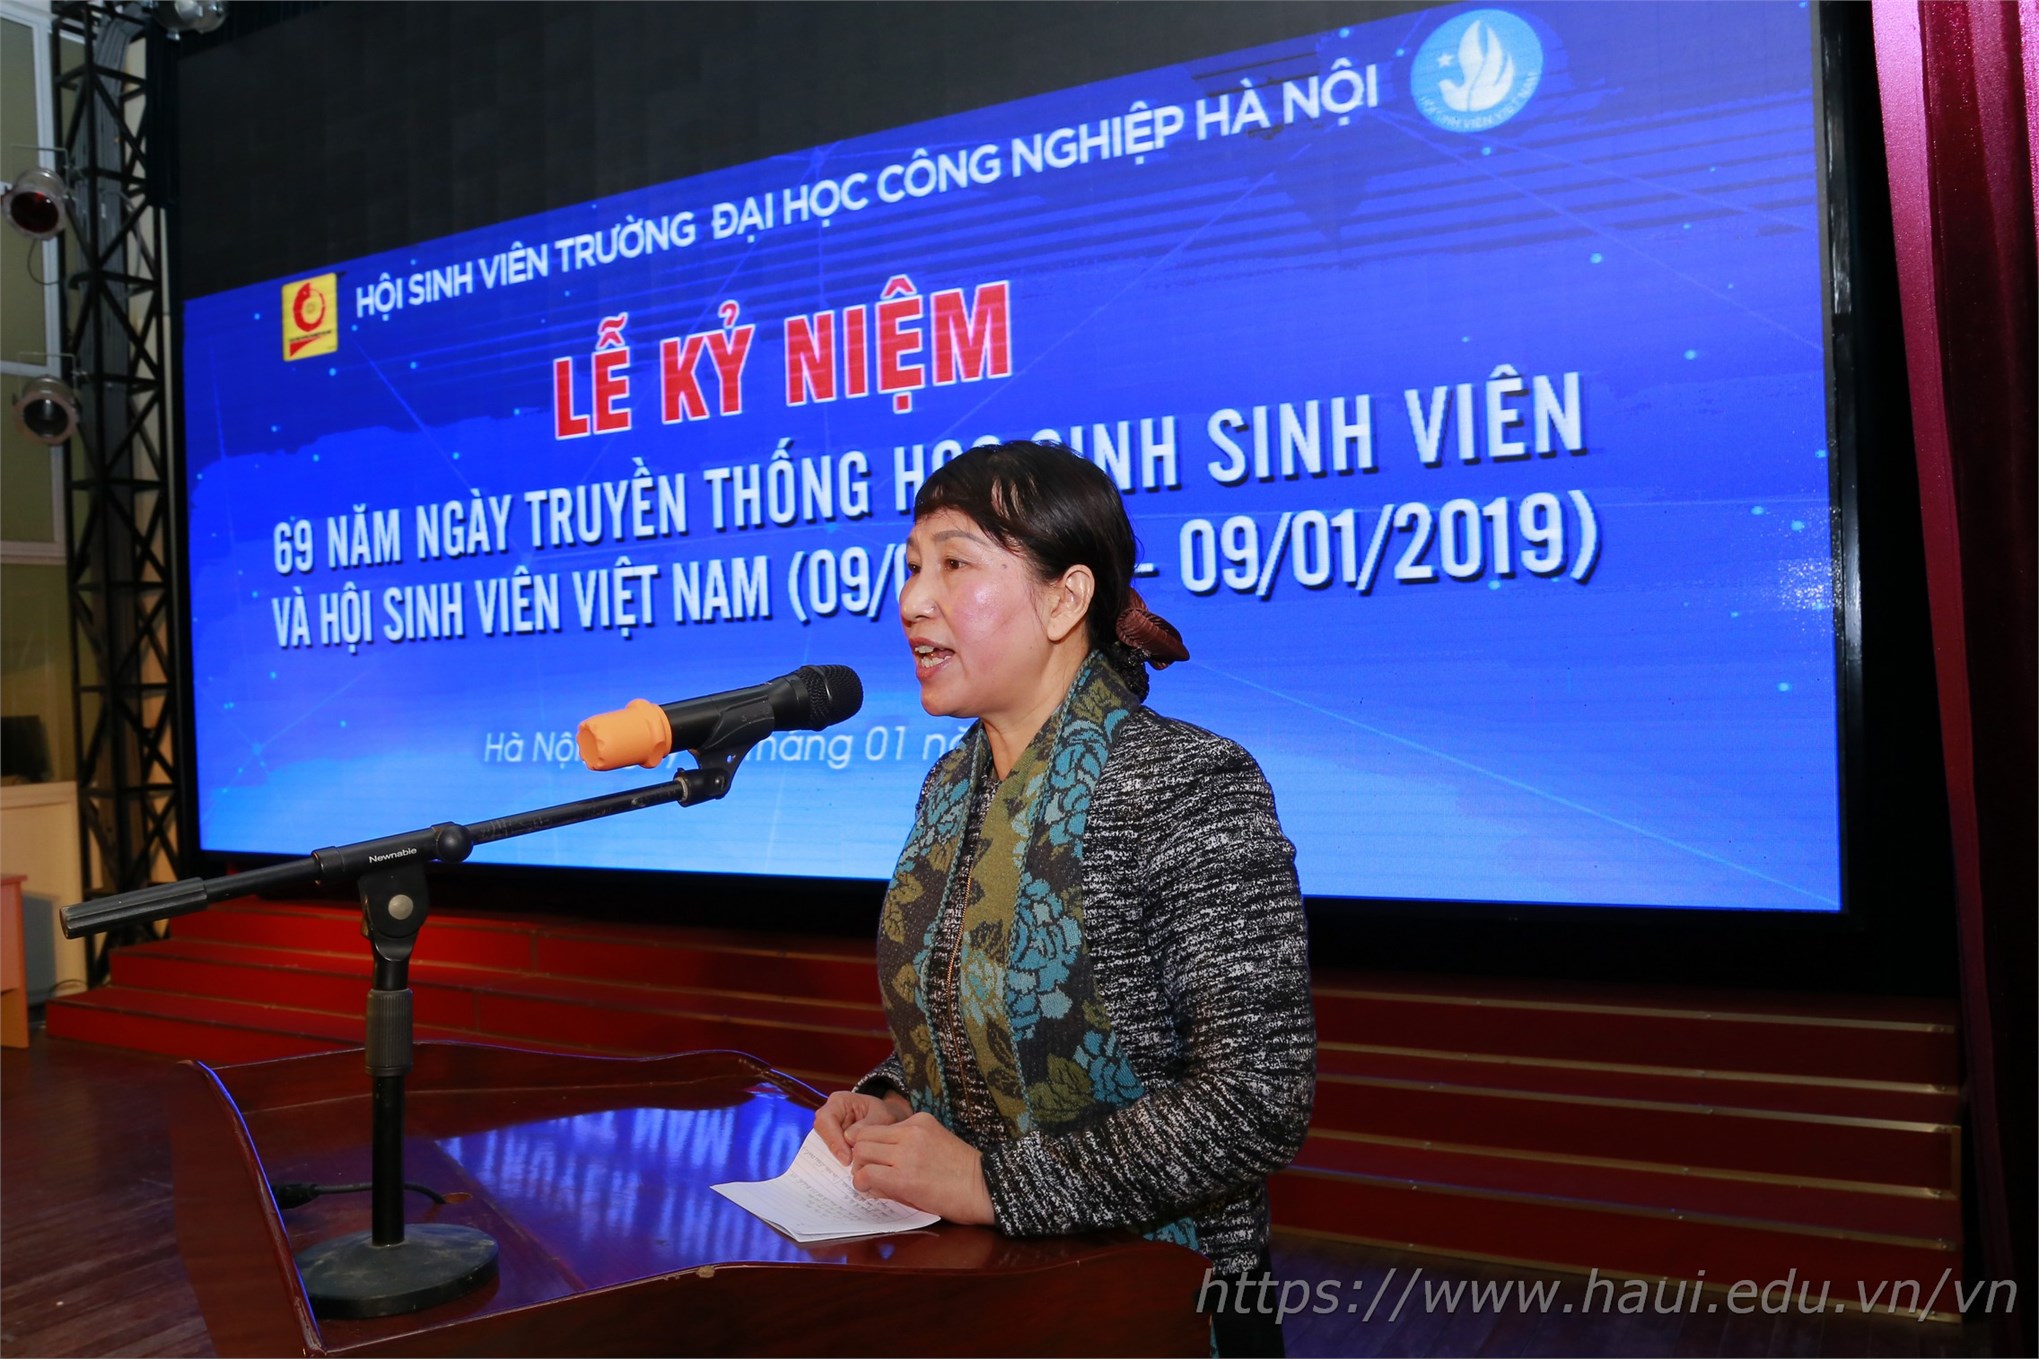 Chuỗi hoạt động chào mừng 69 năm Ngày truyền thống Học sinh Sinh viên và Hội Sinh viên Việt Nam